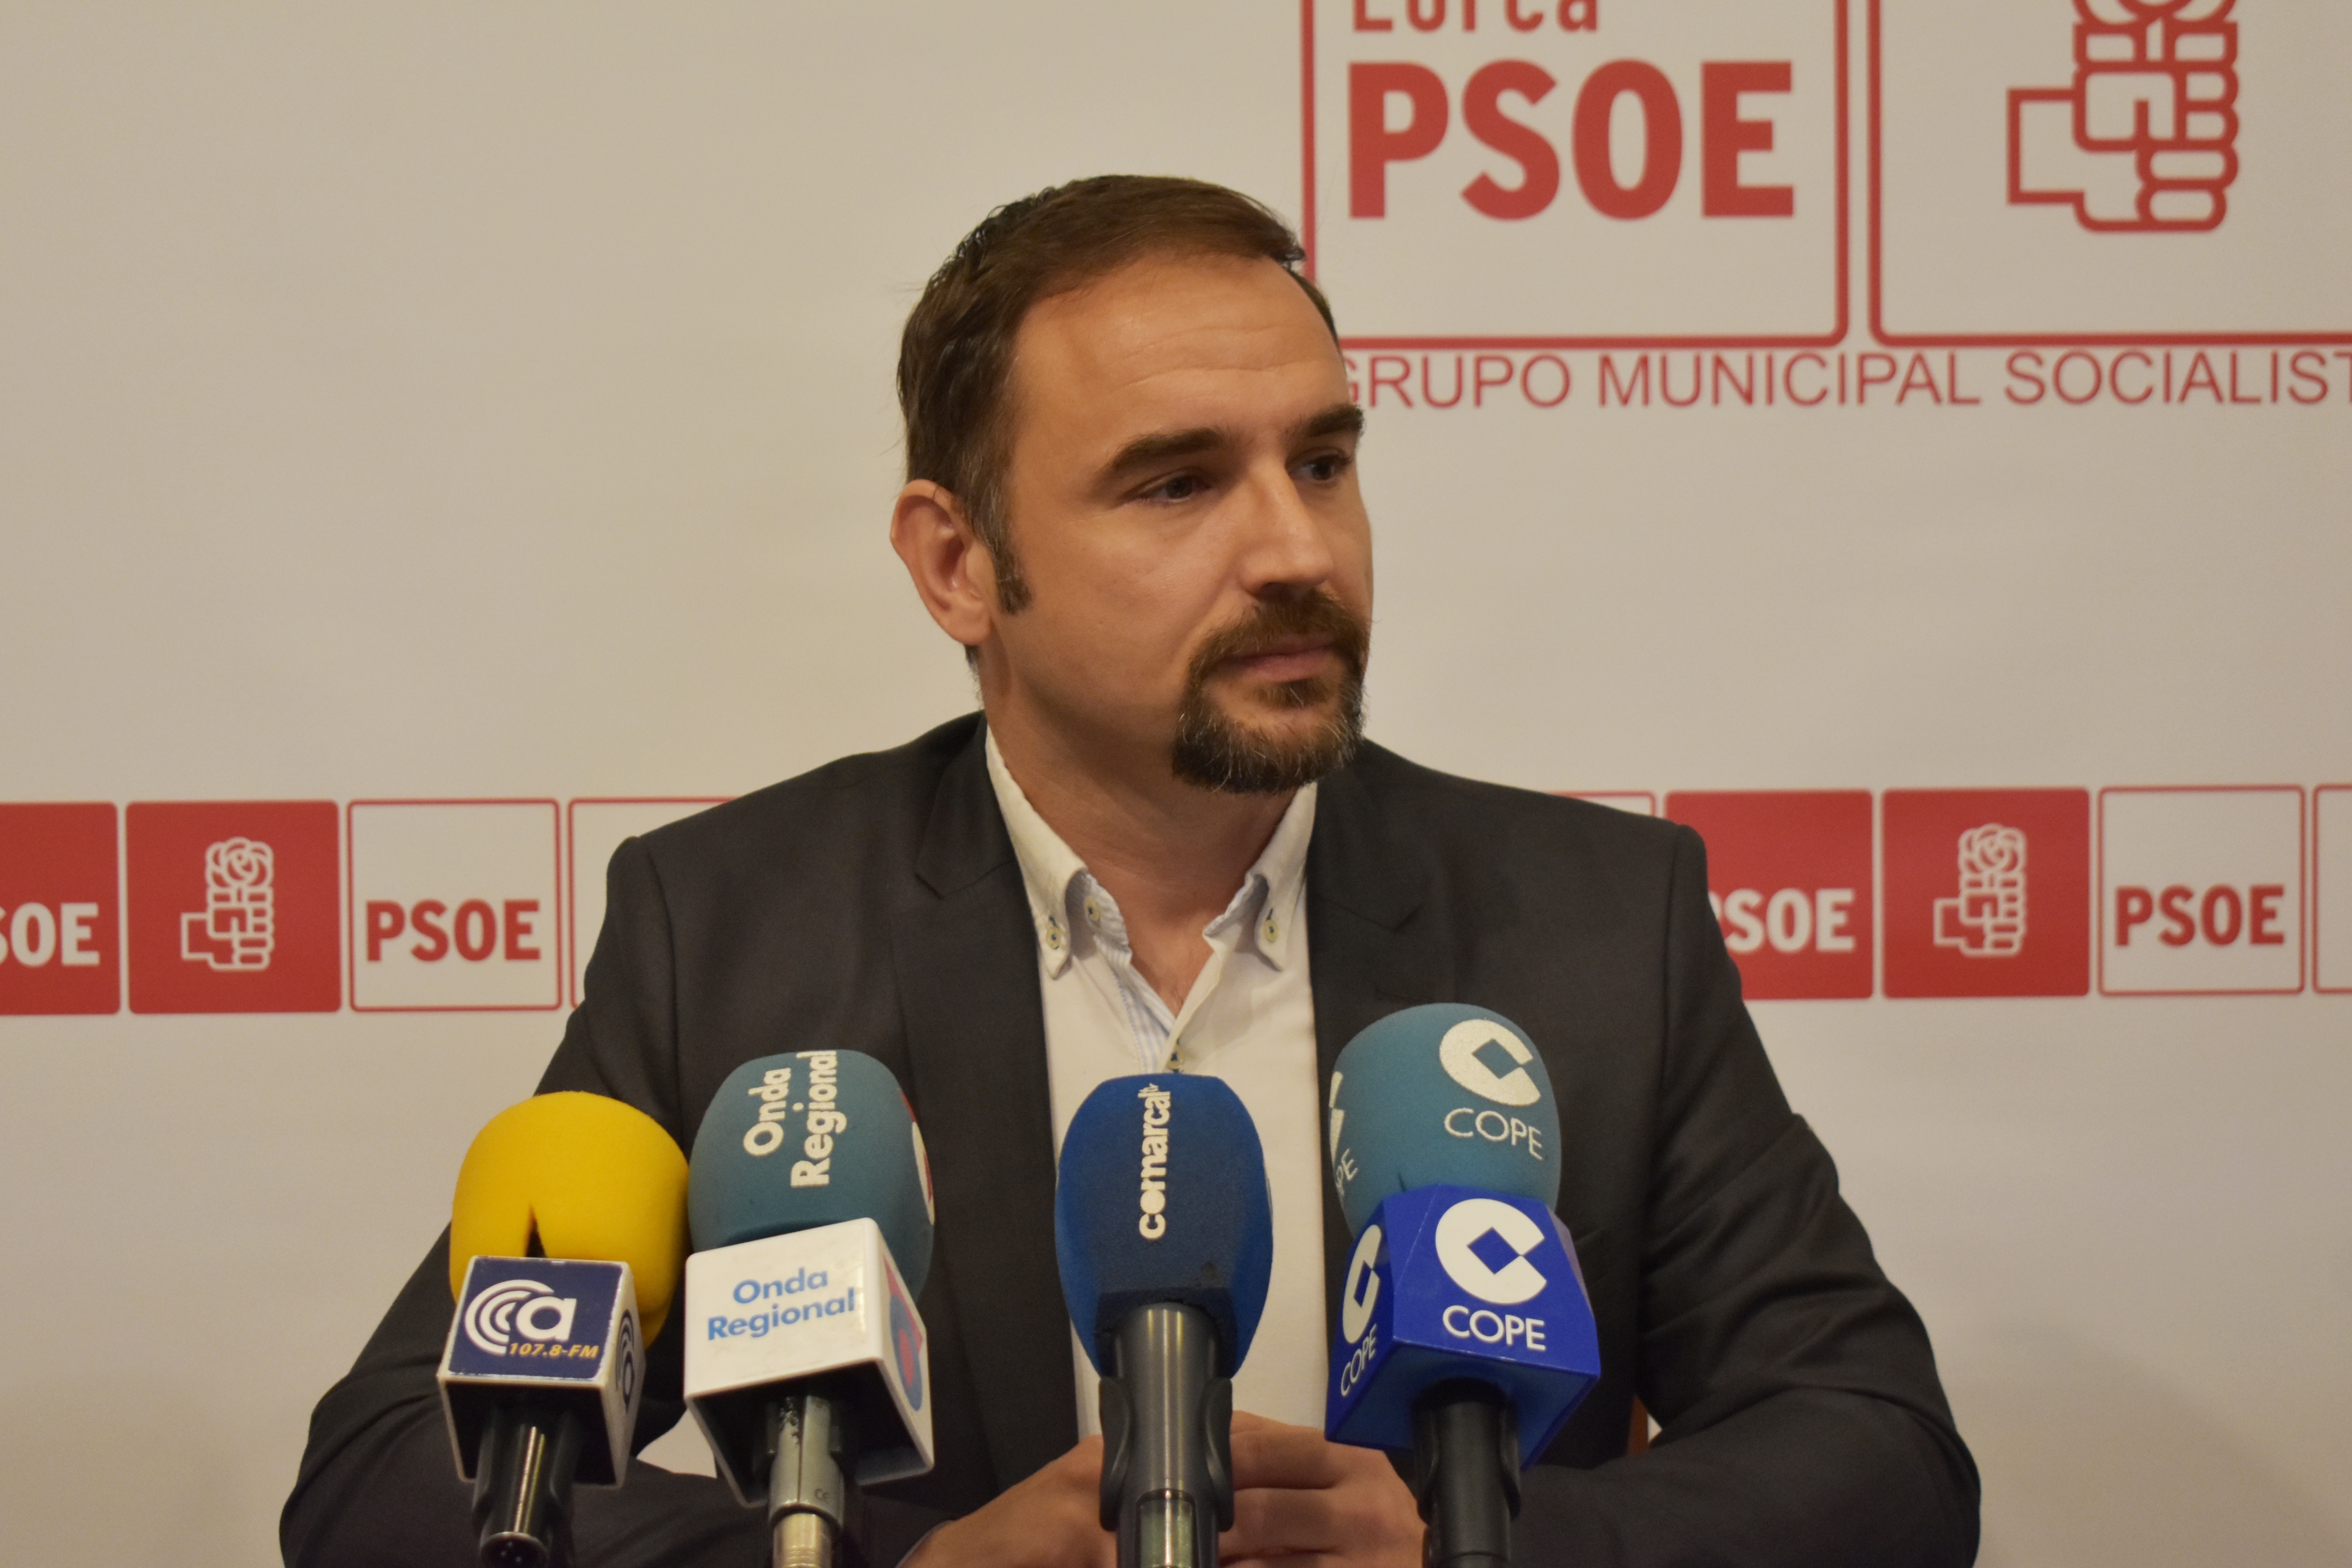 Mateos a Gil Jódar: “El PSOE de Lorca seguirá siendo exigente con Madrid, gobierne quien gobierne, a diferencia de lo que ha hecho usted mientras gobernaba Rajoy”